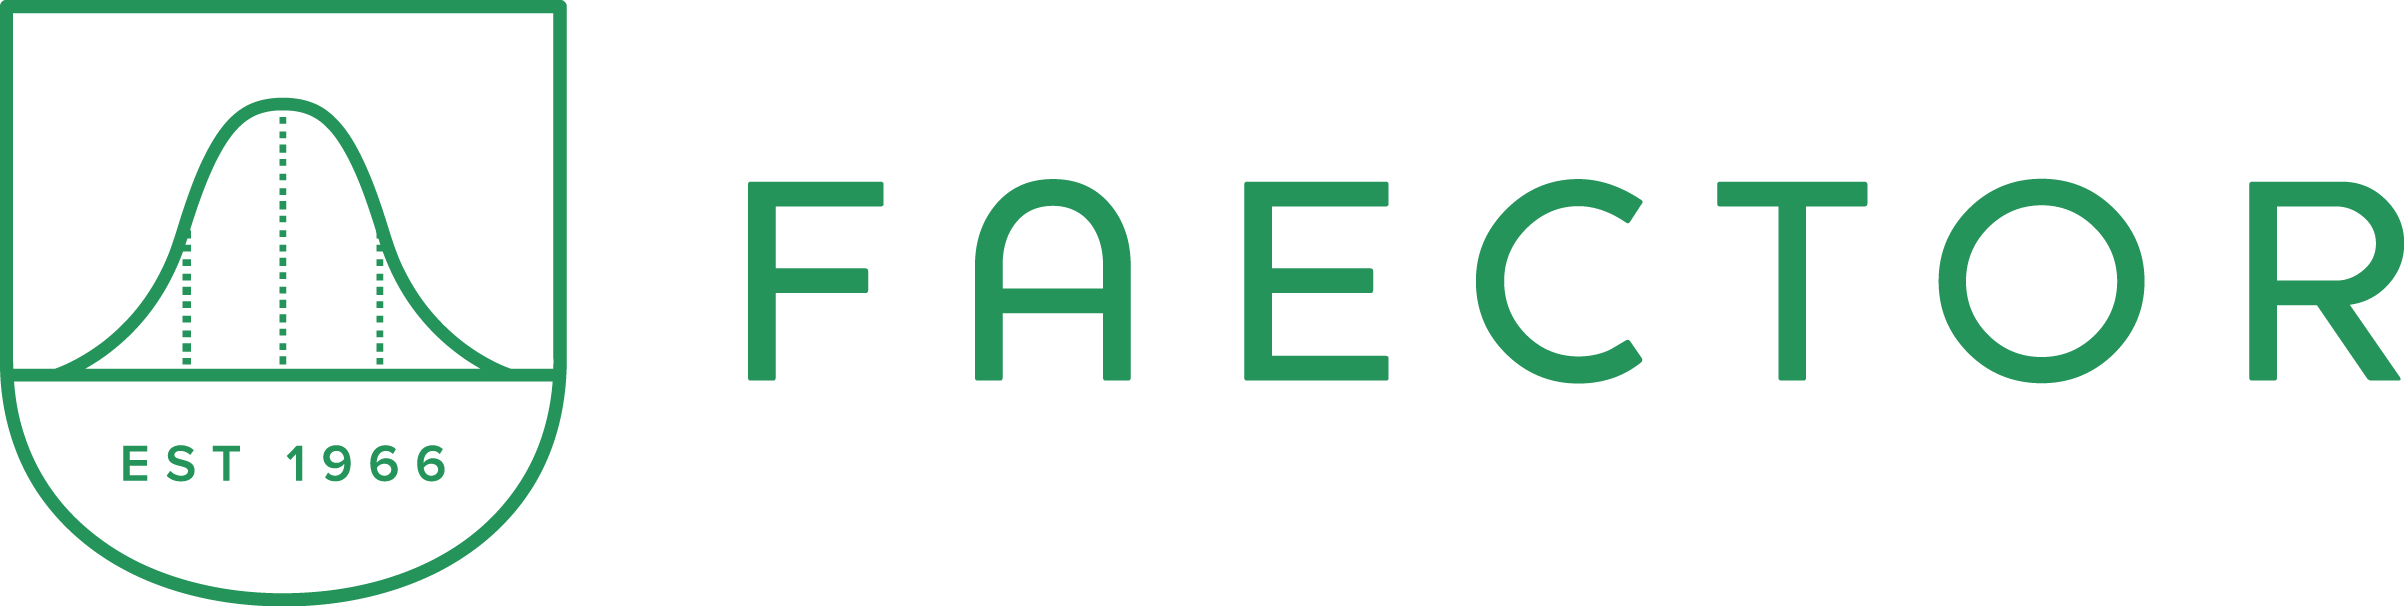 FAECTOR logo